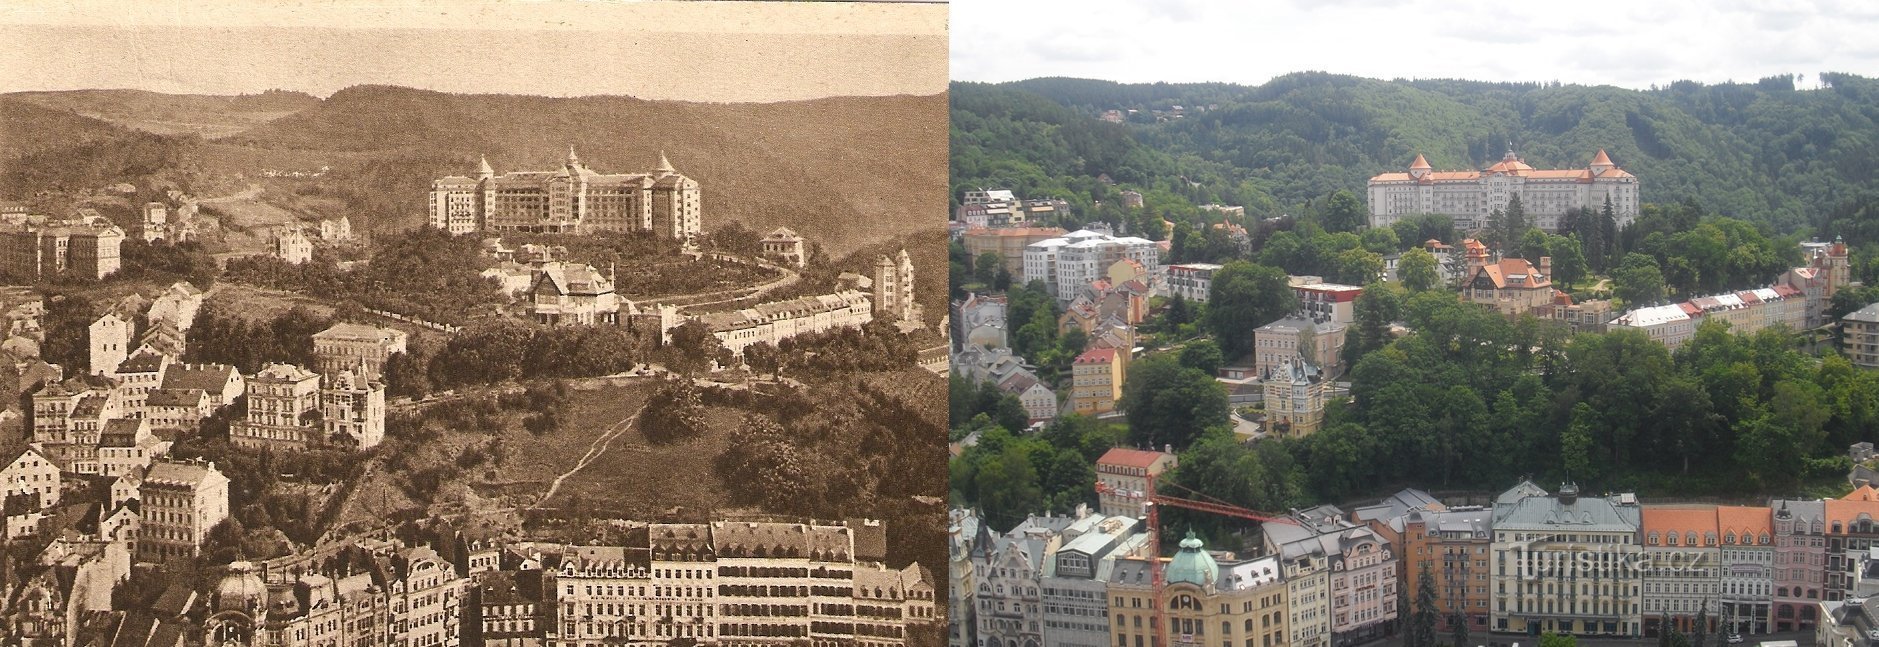 Karlovy Vary en vistas anteriores y fotos actuales